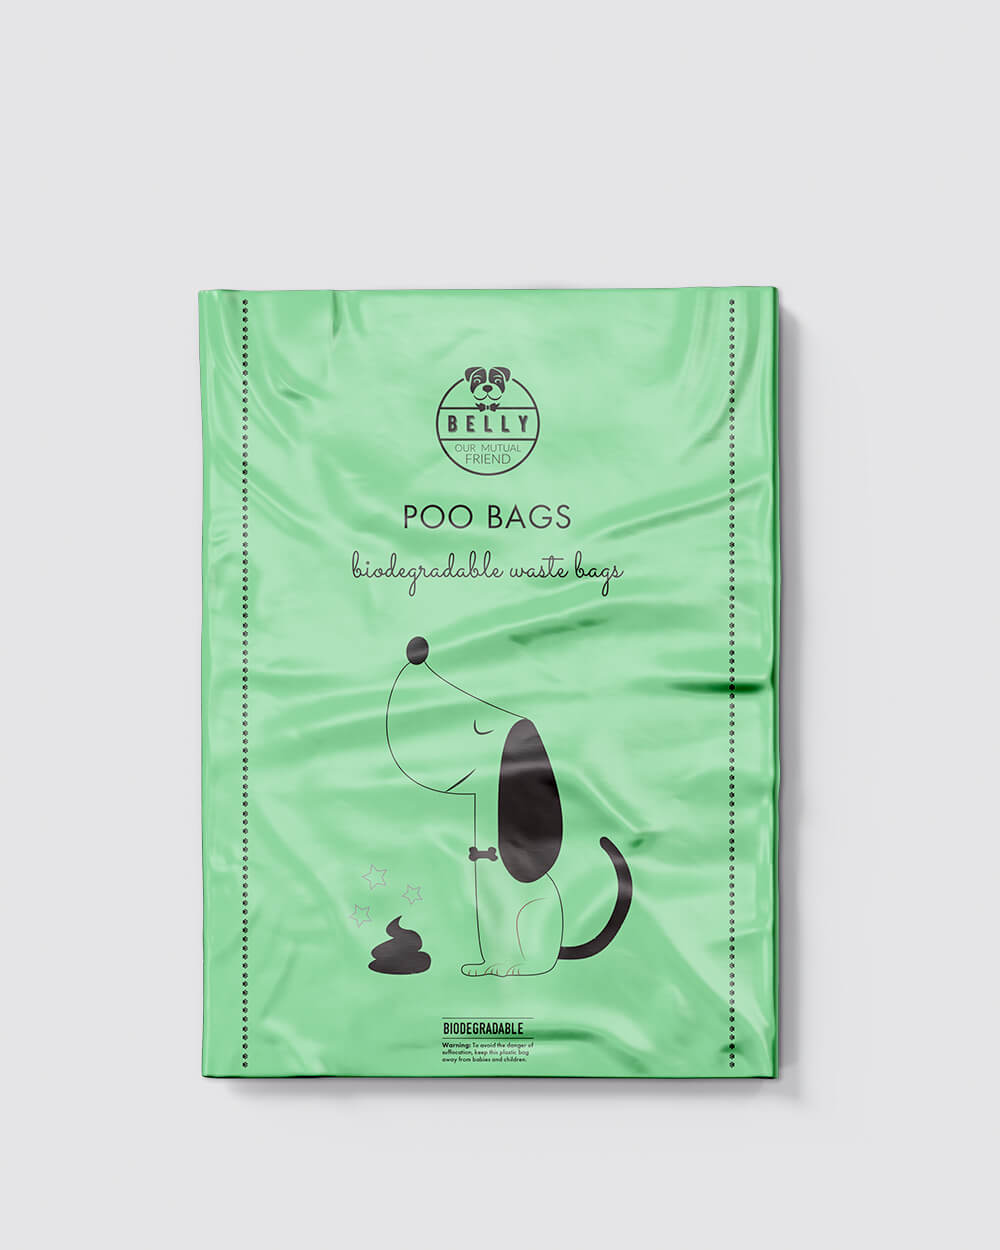 Bolsas de caca biodegradables - 15 rollos - 225 bolsas